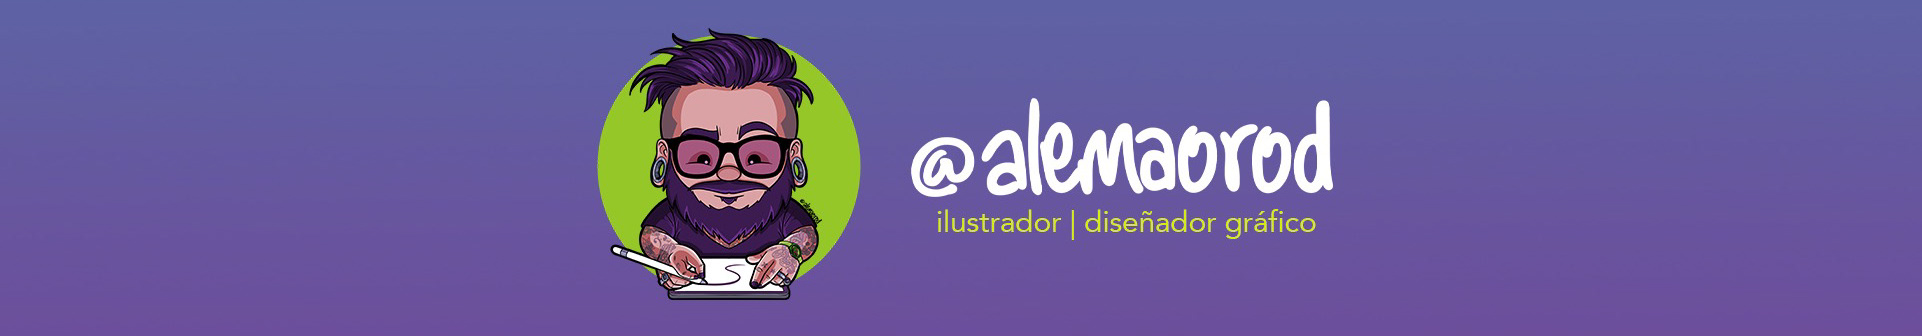 Banner del profilo di Alemao Rod